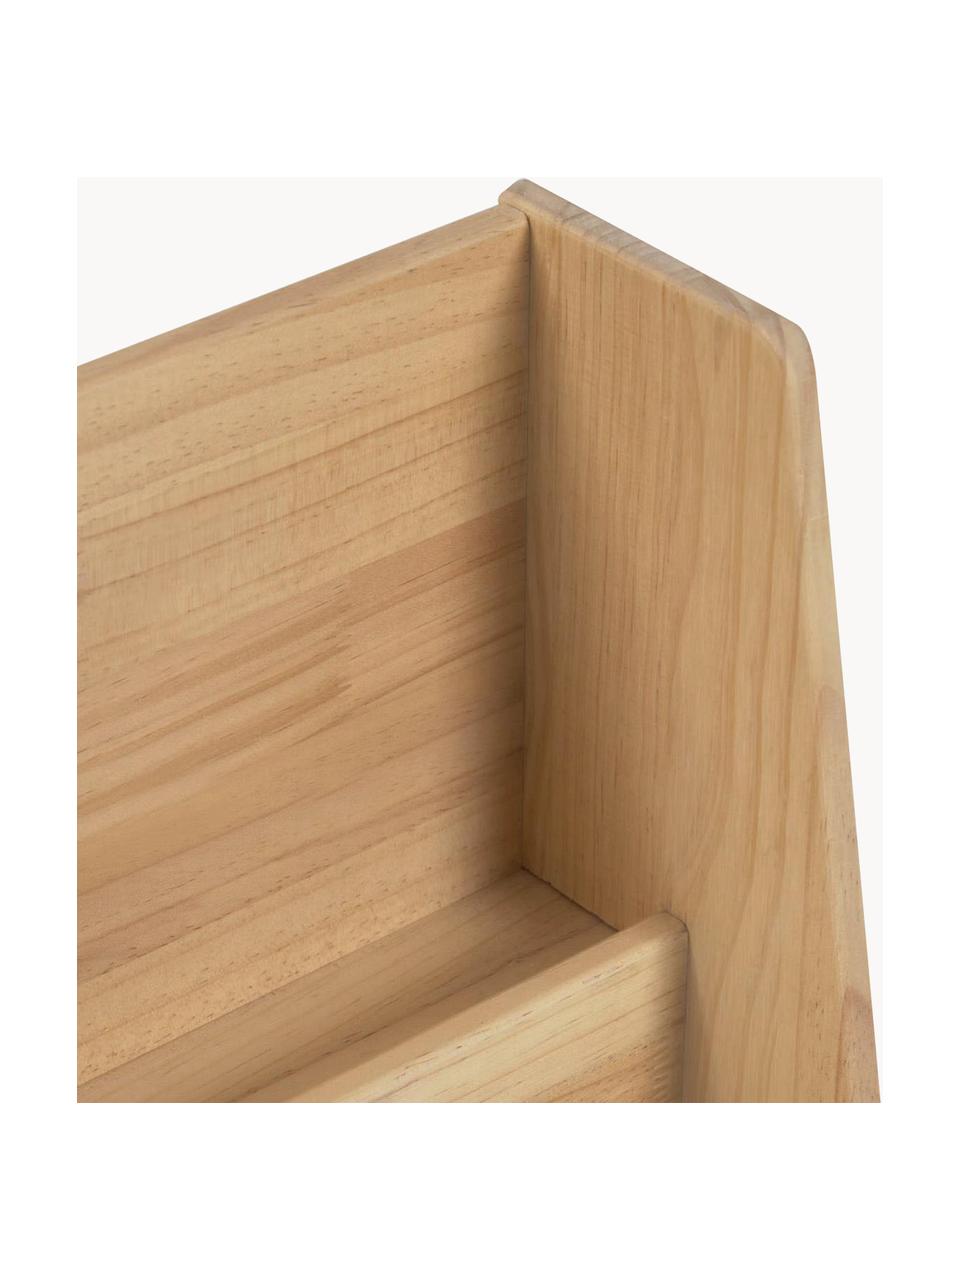 Dětský regál z borovicového dřeva Adivcentina, Borovicové dřevo

Tento produkt je vyroben z udržitelných zdrojů dřeva s certifikací FSC®., Borovicové dřevo, Š 60 cm, V 70 cm